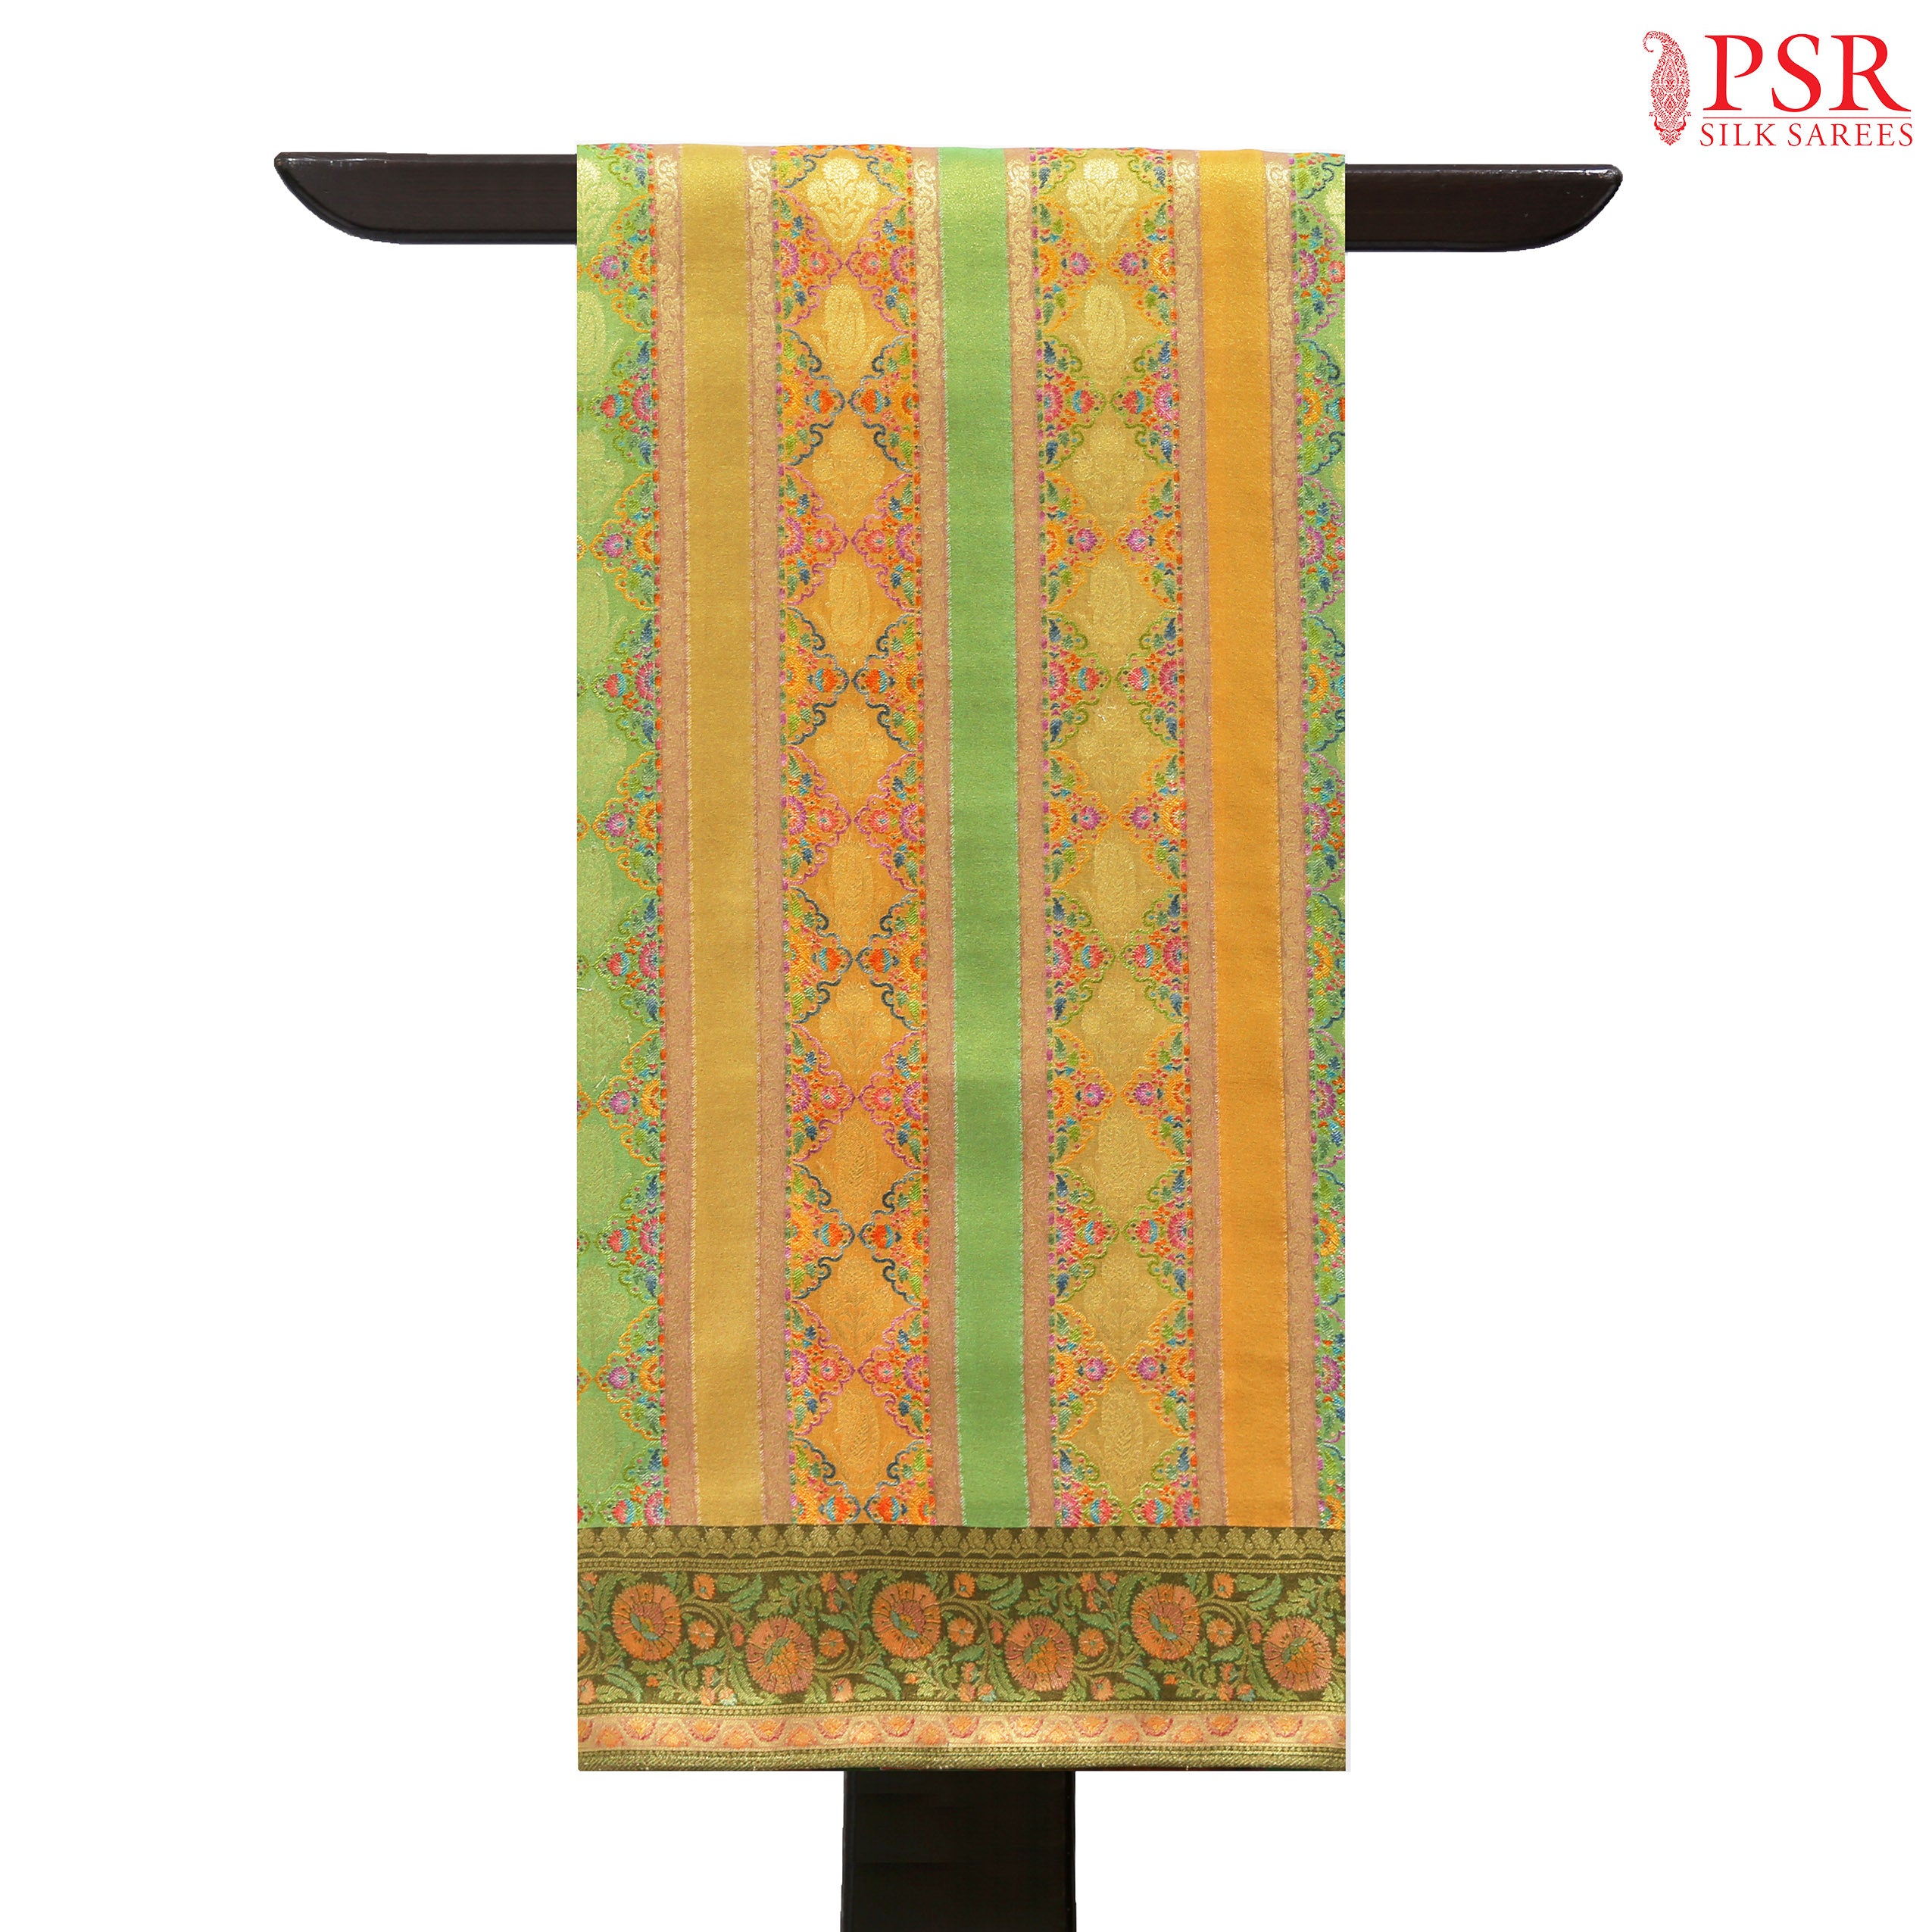 psr silks kadi silk designer colorful zari work strips pear green and olive mustard